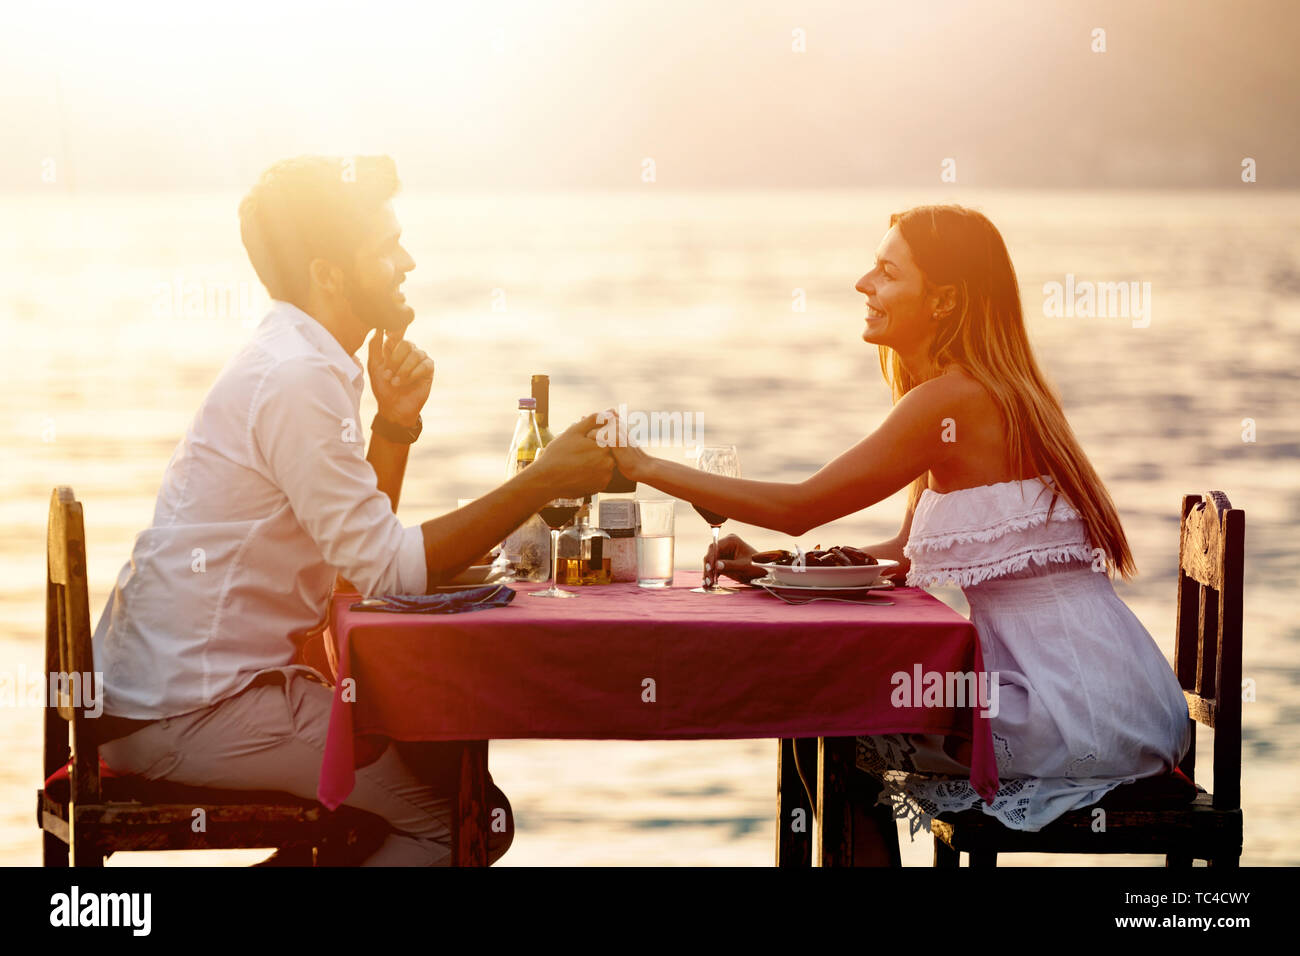 La gente, las vacaciones, el amor y el romance concepto. Pareja joven disfrutando de una cena romántica en la playa. Foto de stock